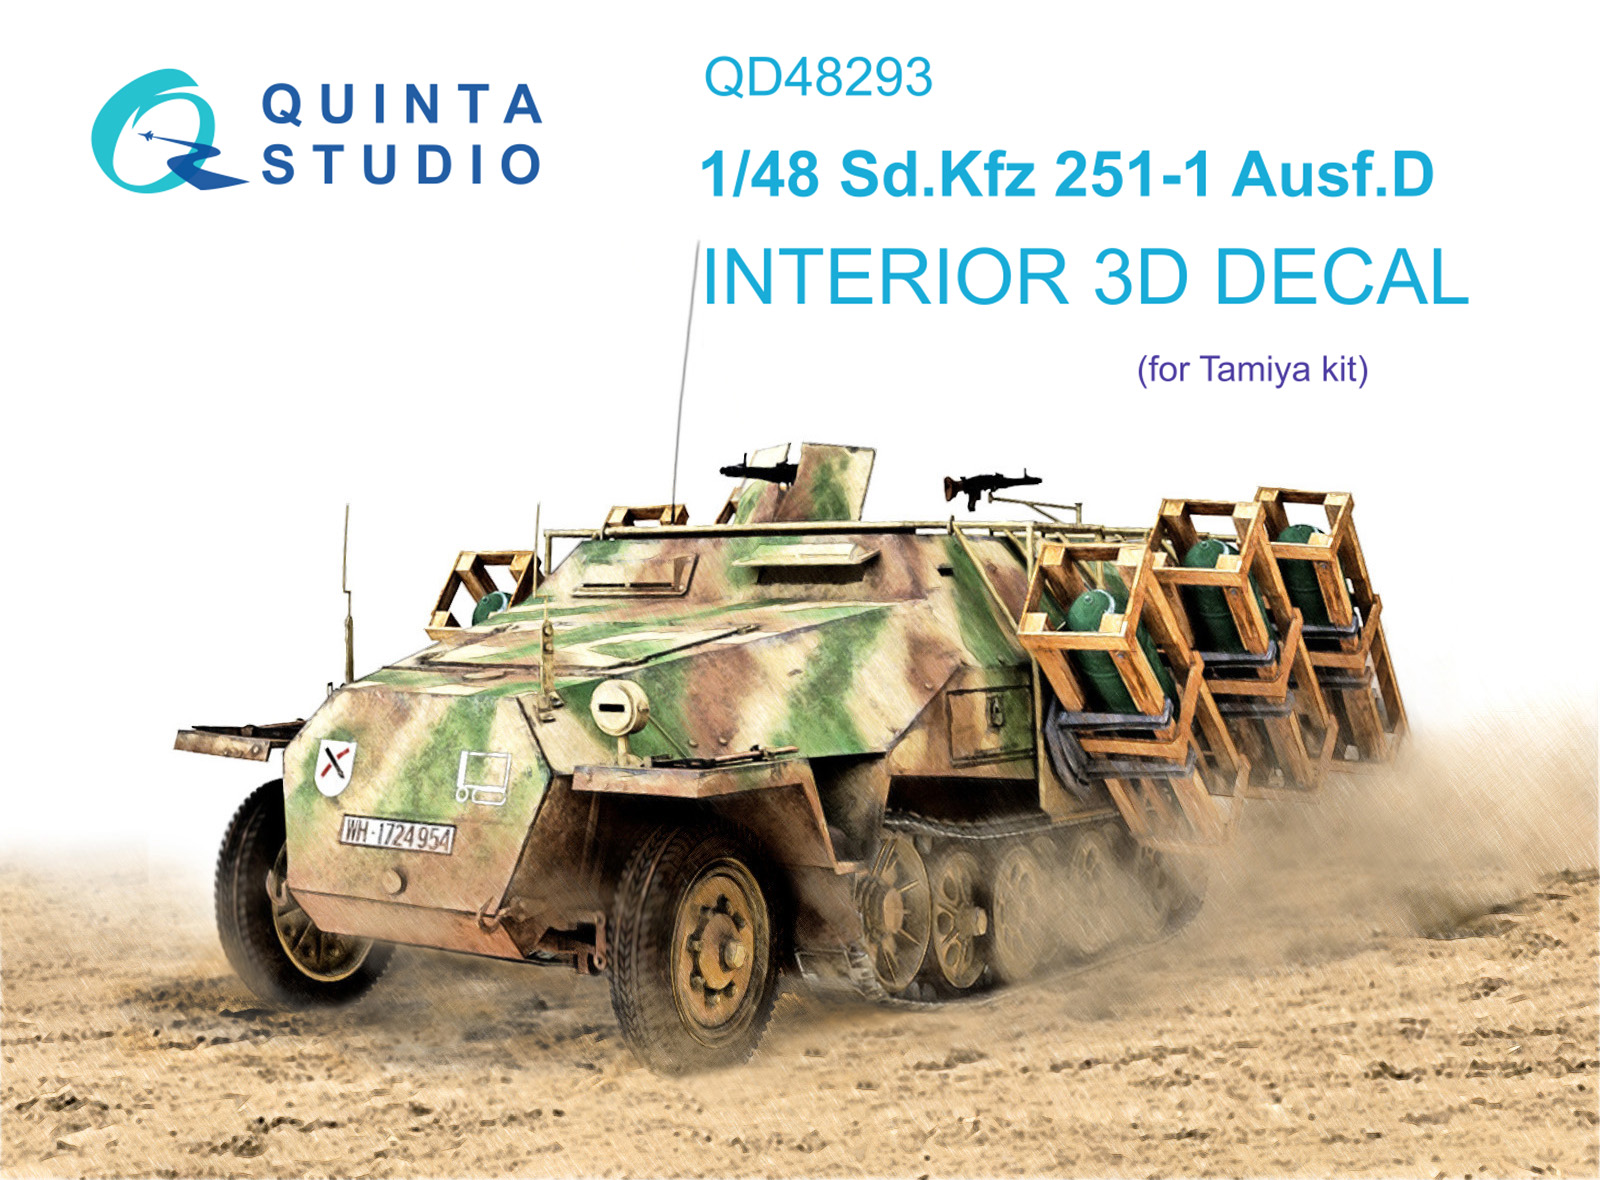 3D декали для Opel Blitz и Sd.Kfz 251 от компании Quinta Studio